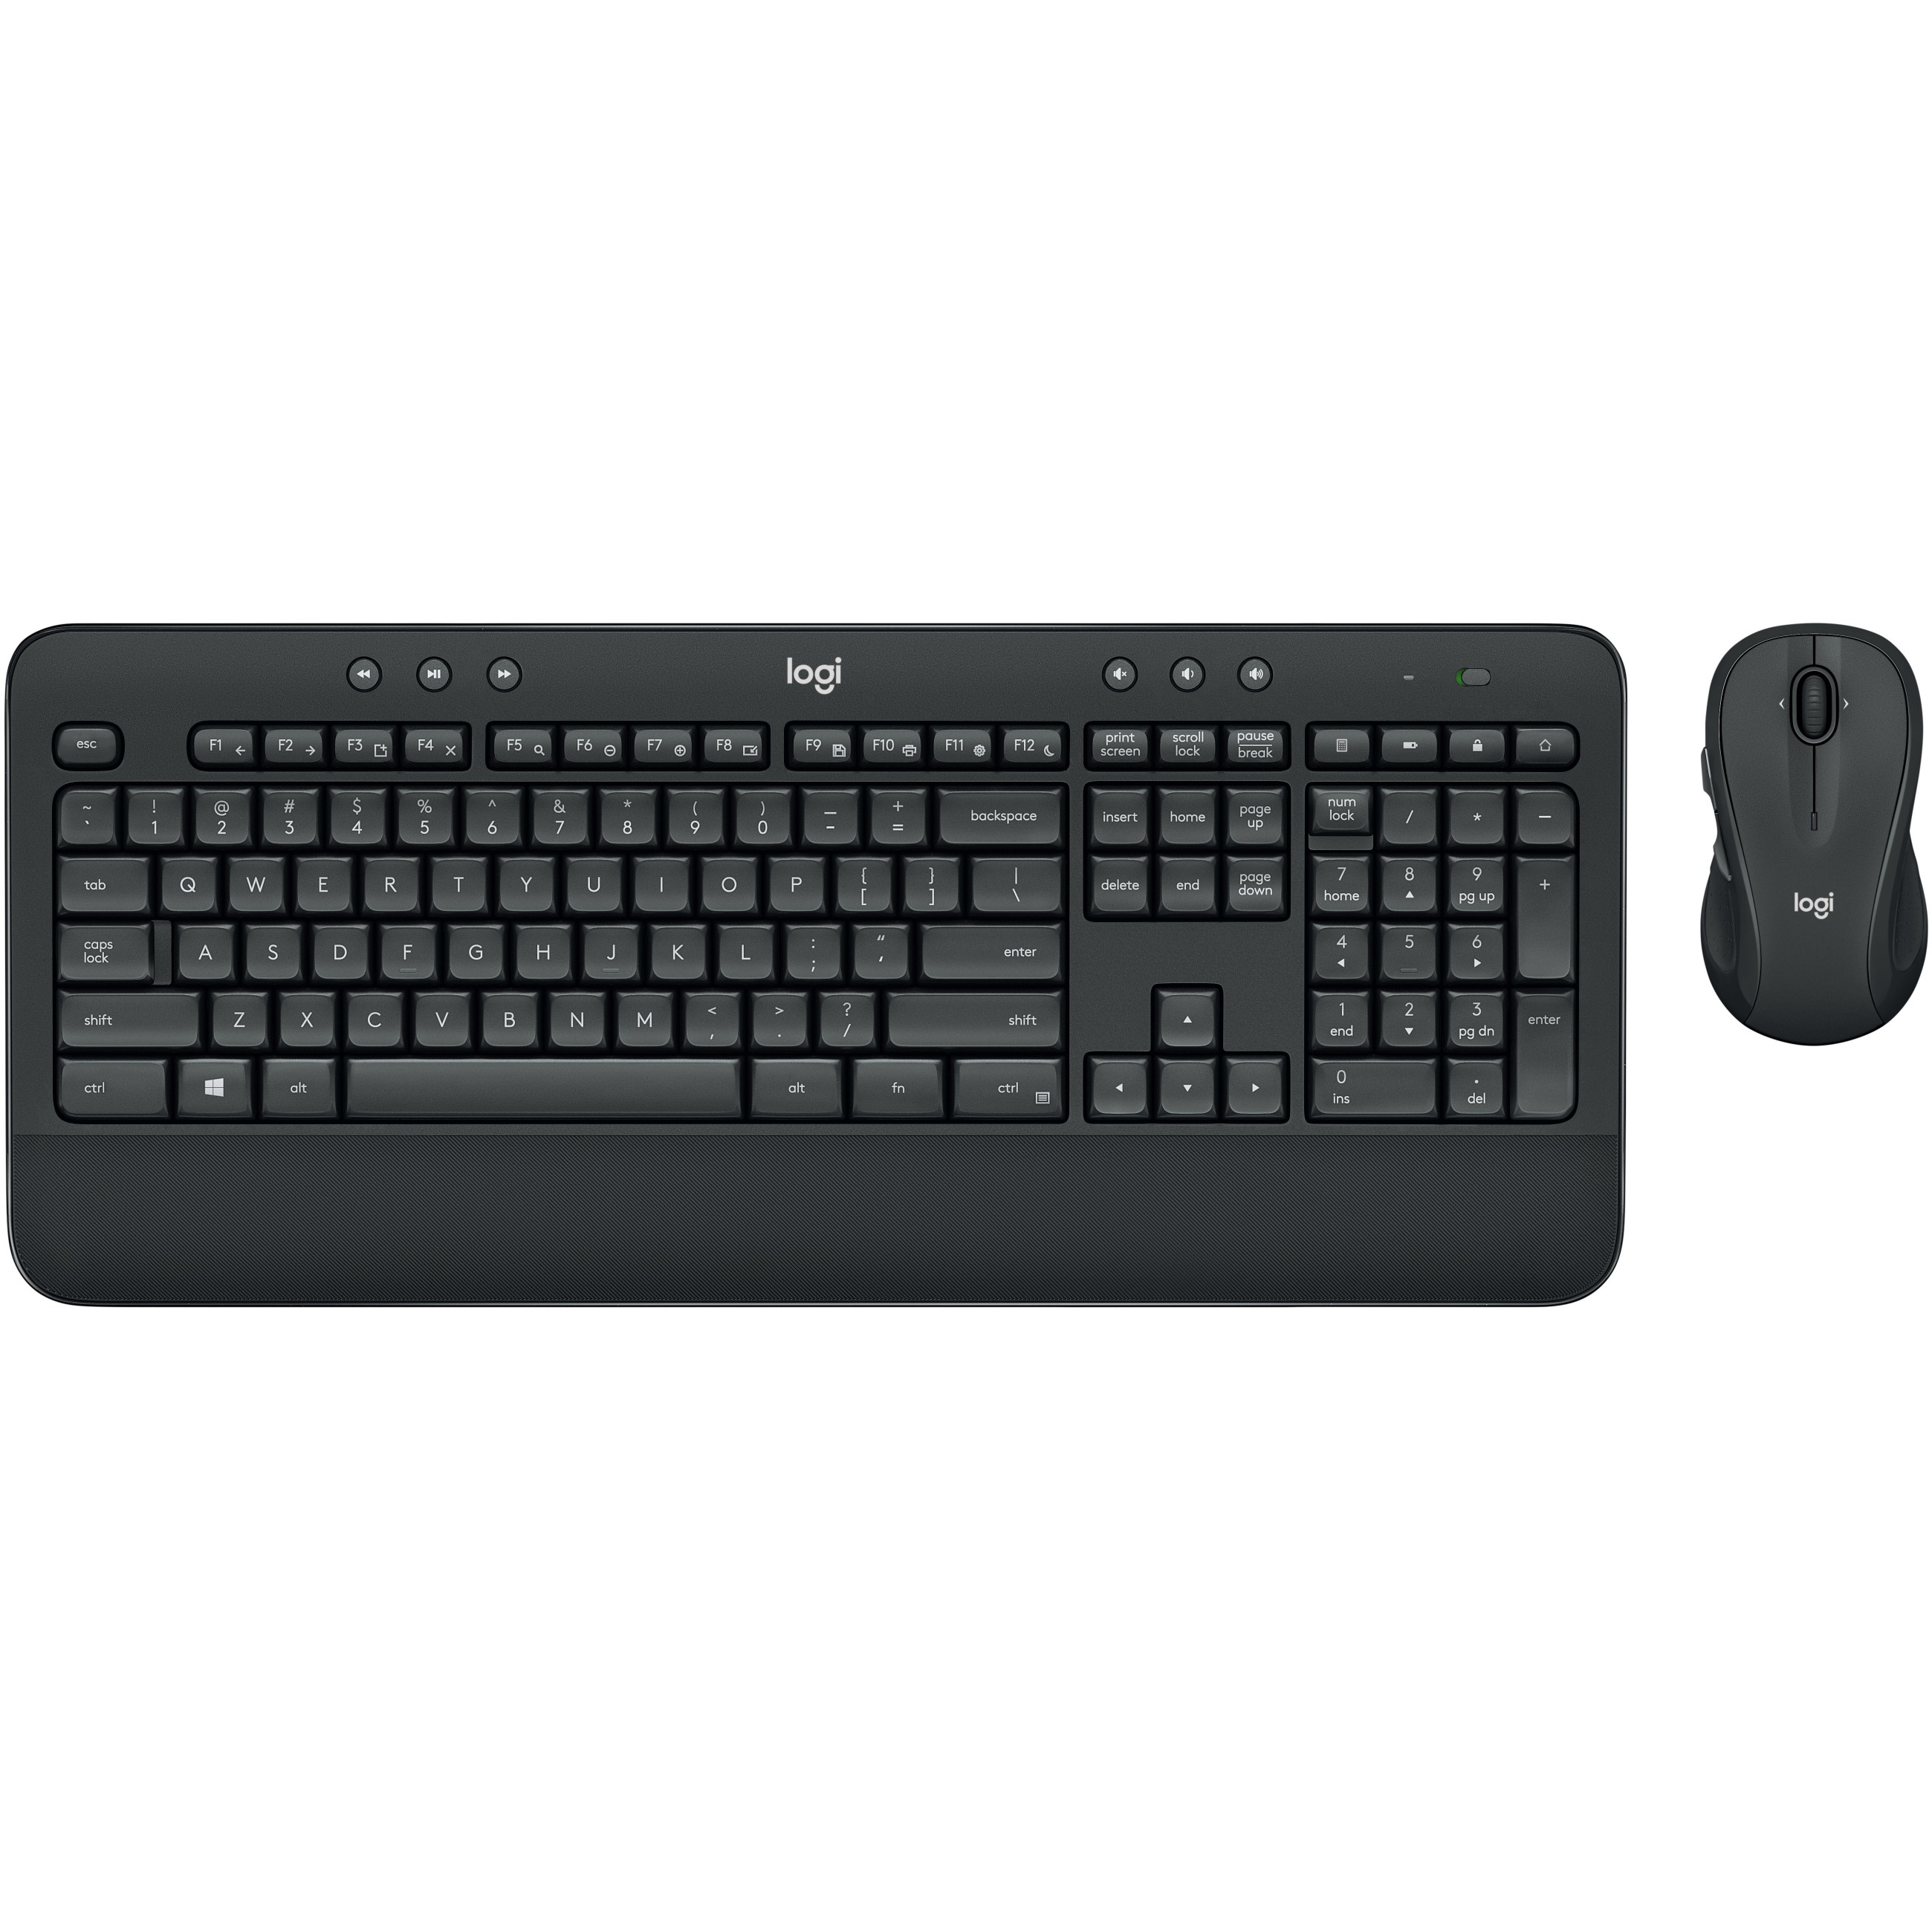 Logitech MK545 ADVANCED Wireless and Mouse Combo keyboard - 920-008889